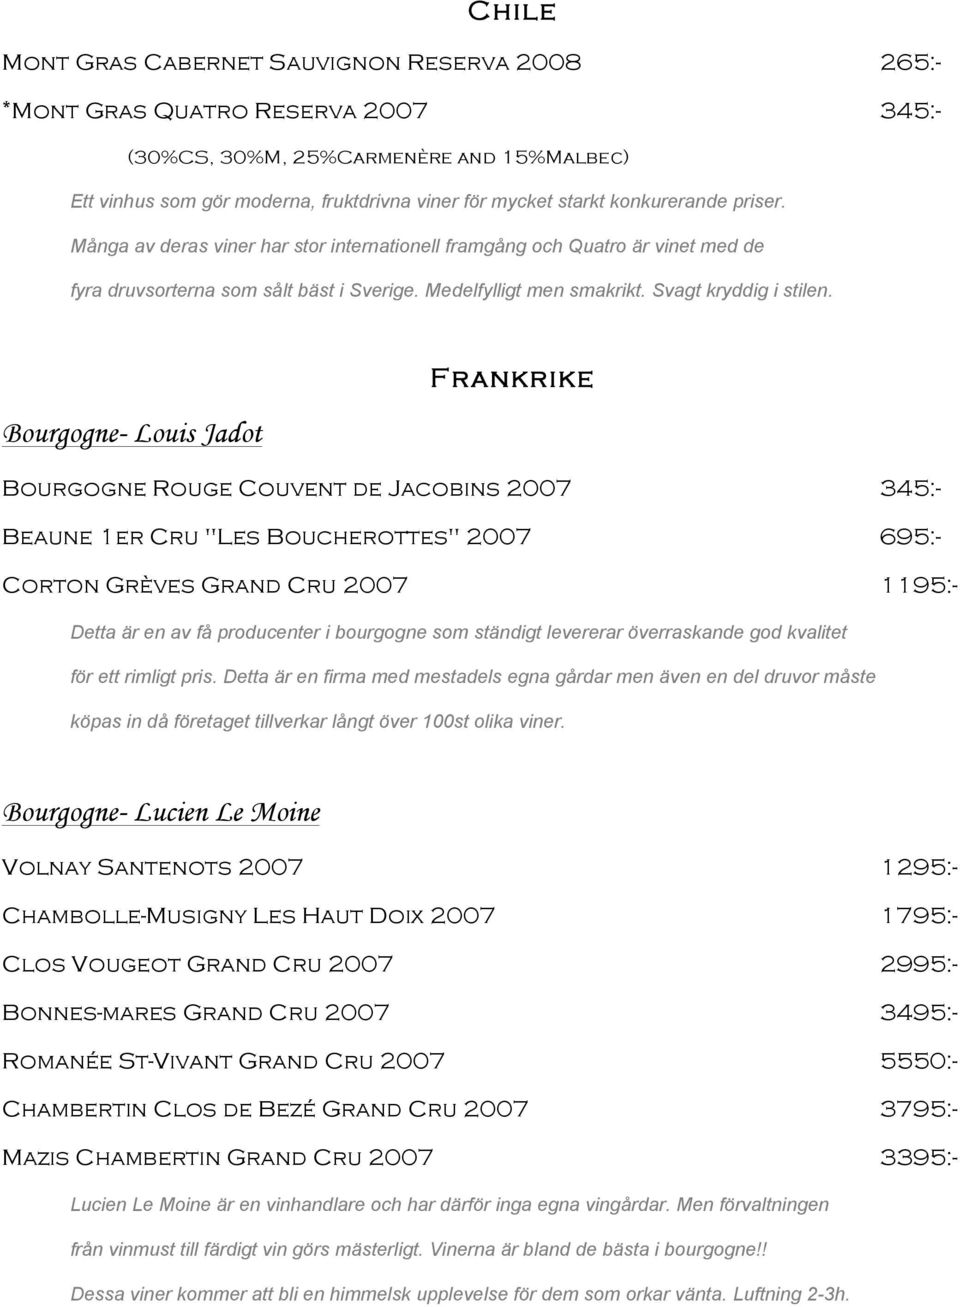 Frankrike Bourgogne- Louis Jadot Bourgogne Rouge Couvent de Jacobins 2007 345:- Beaune 1er Cru "Les Boucherottes" 2007 695:- Corton Grèves Grand Cru 2007 1195:- Detta är en av få producenter i